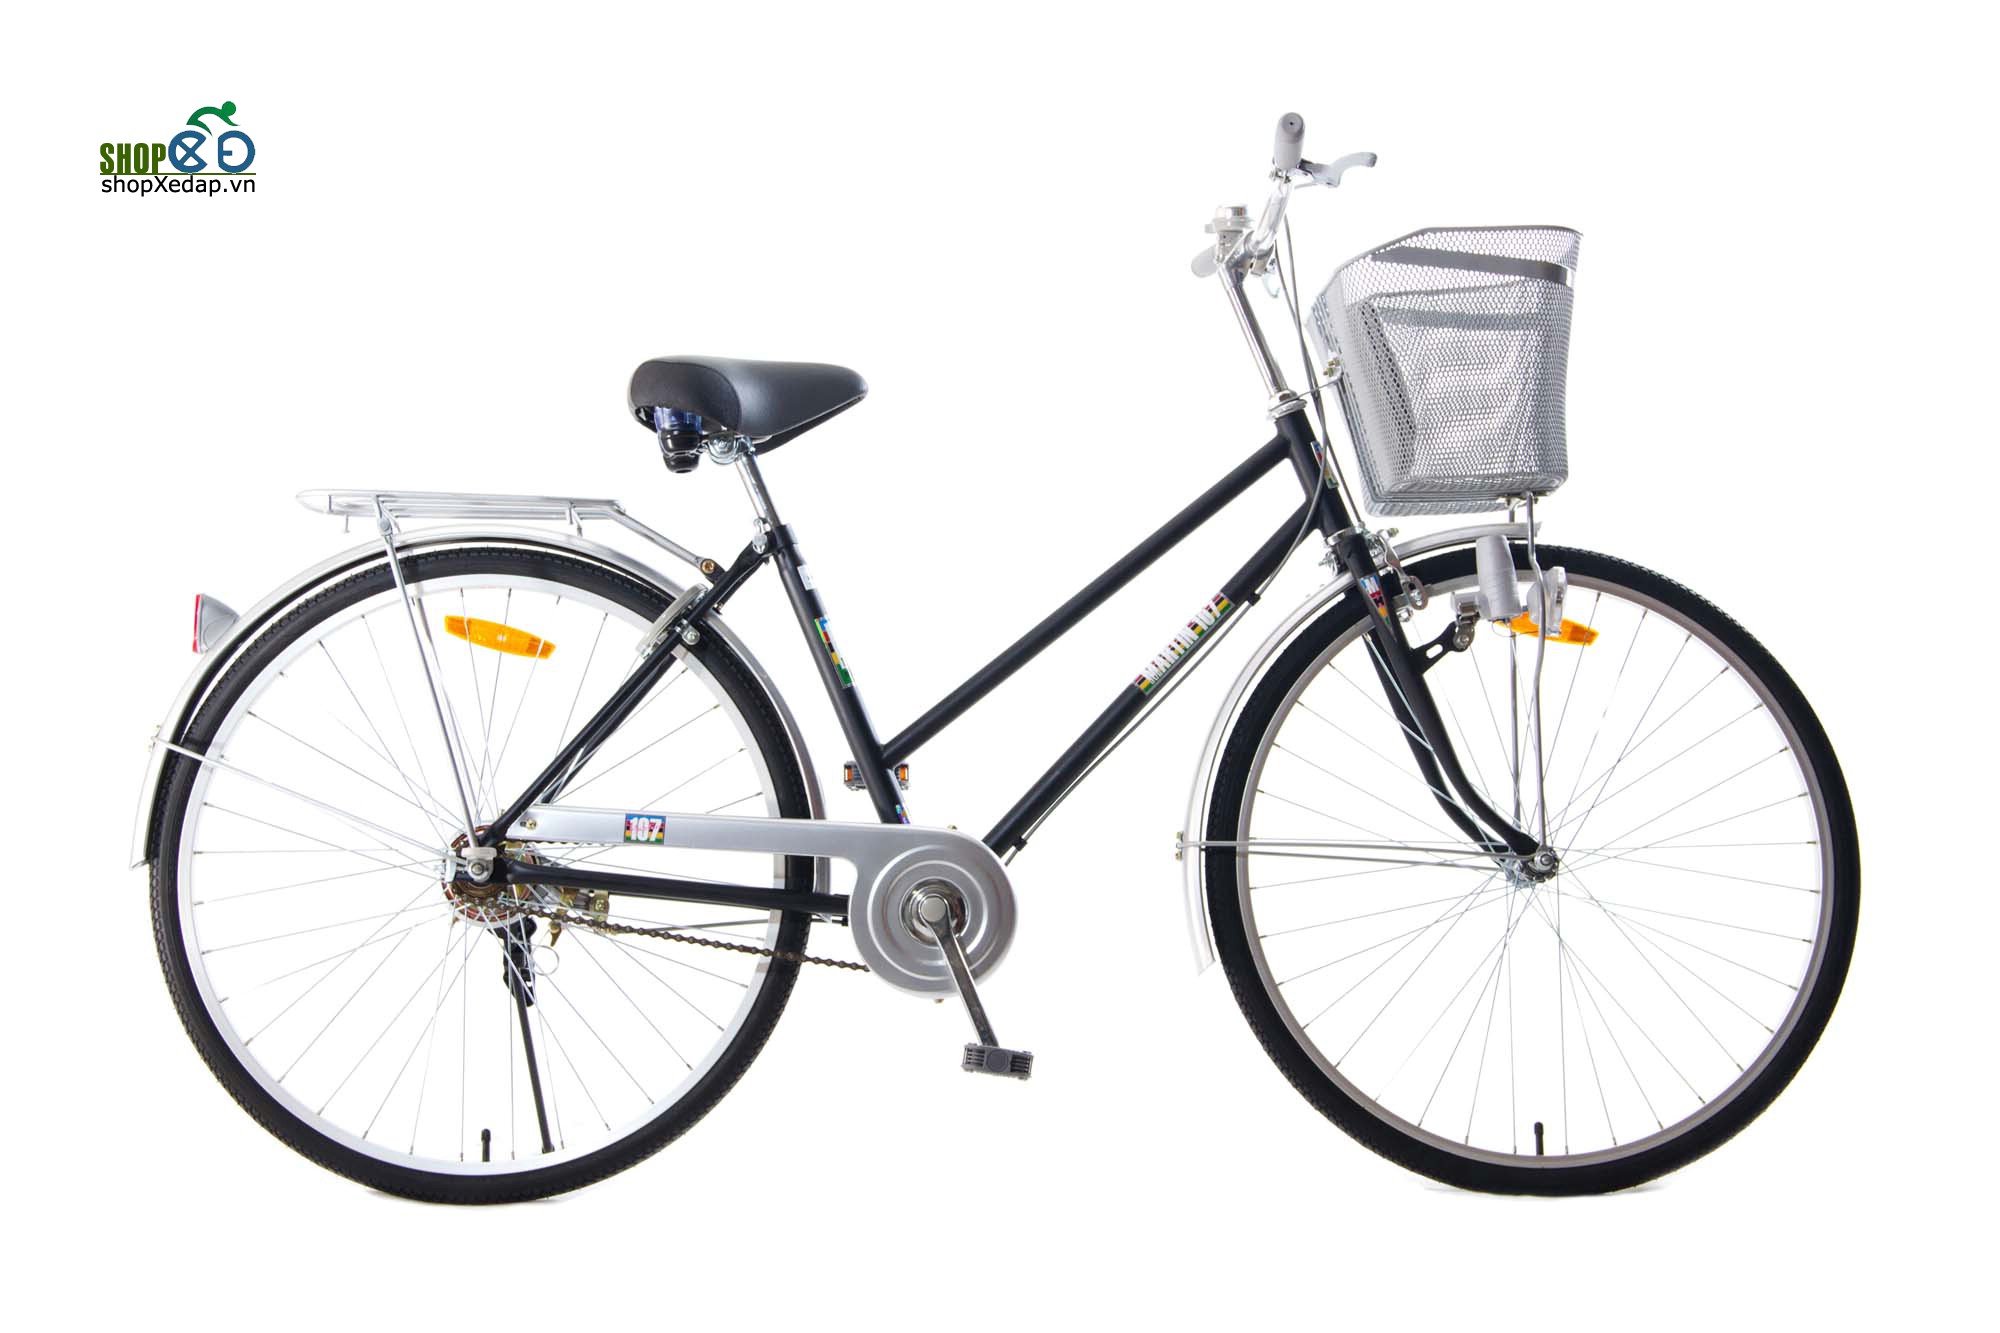 Xe đạp thông dụng - Cào cào tiêu chuẩn (26")